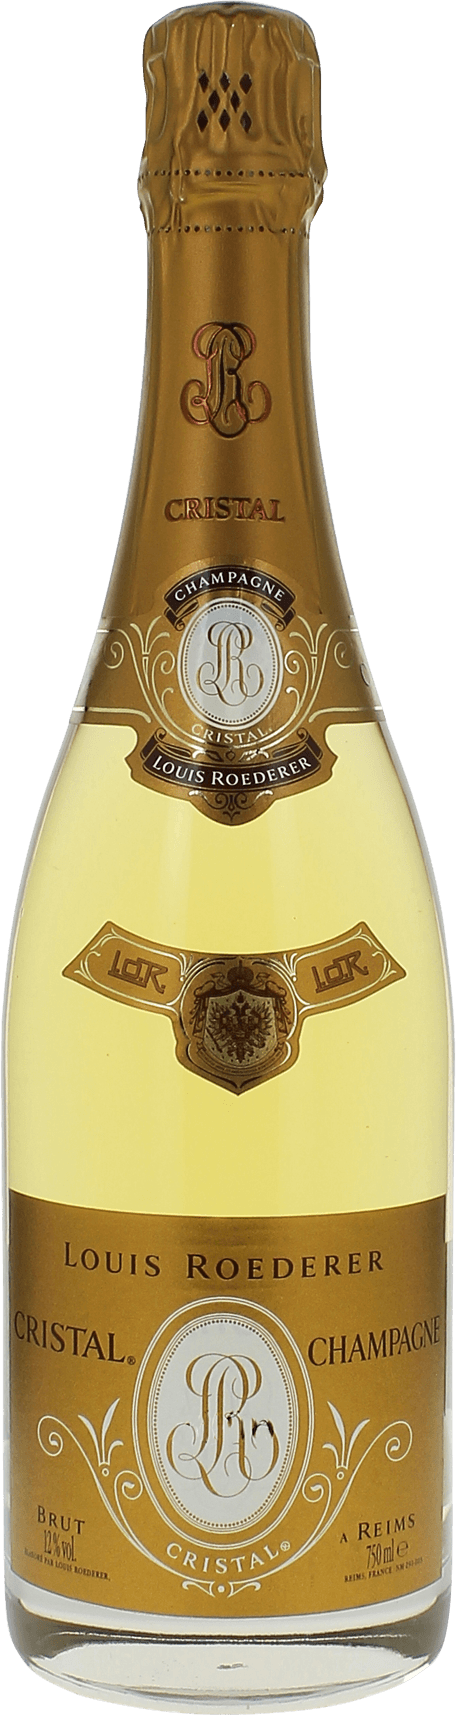 Cristal roederer 1993  Roederer, Champagne